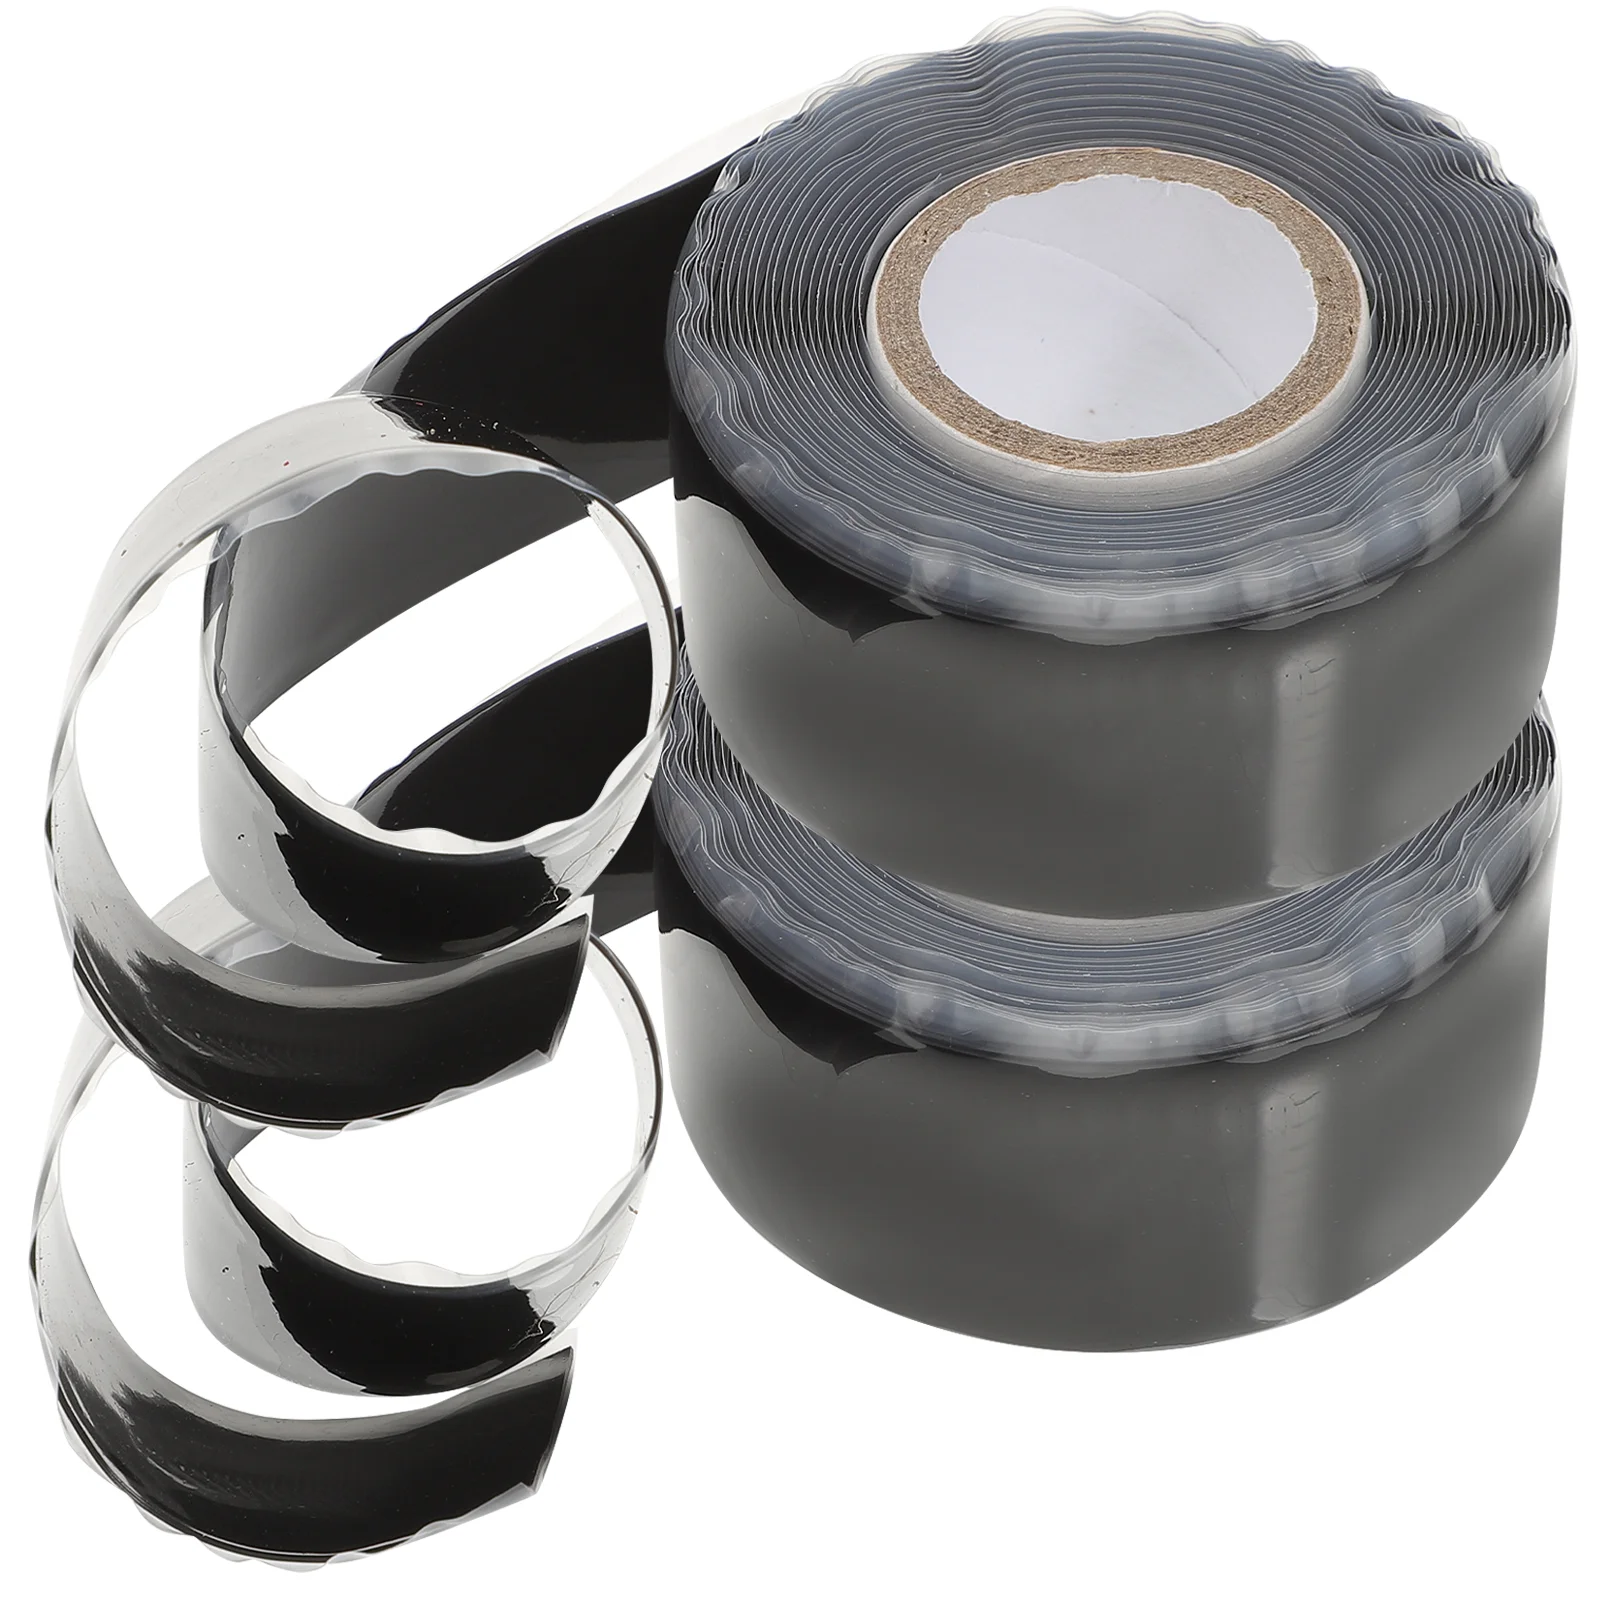 

2pcs Water Pipe Repair Tape Waterproof Sealing Tape Pipe Leakage Repairing Tape